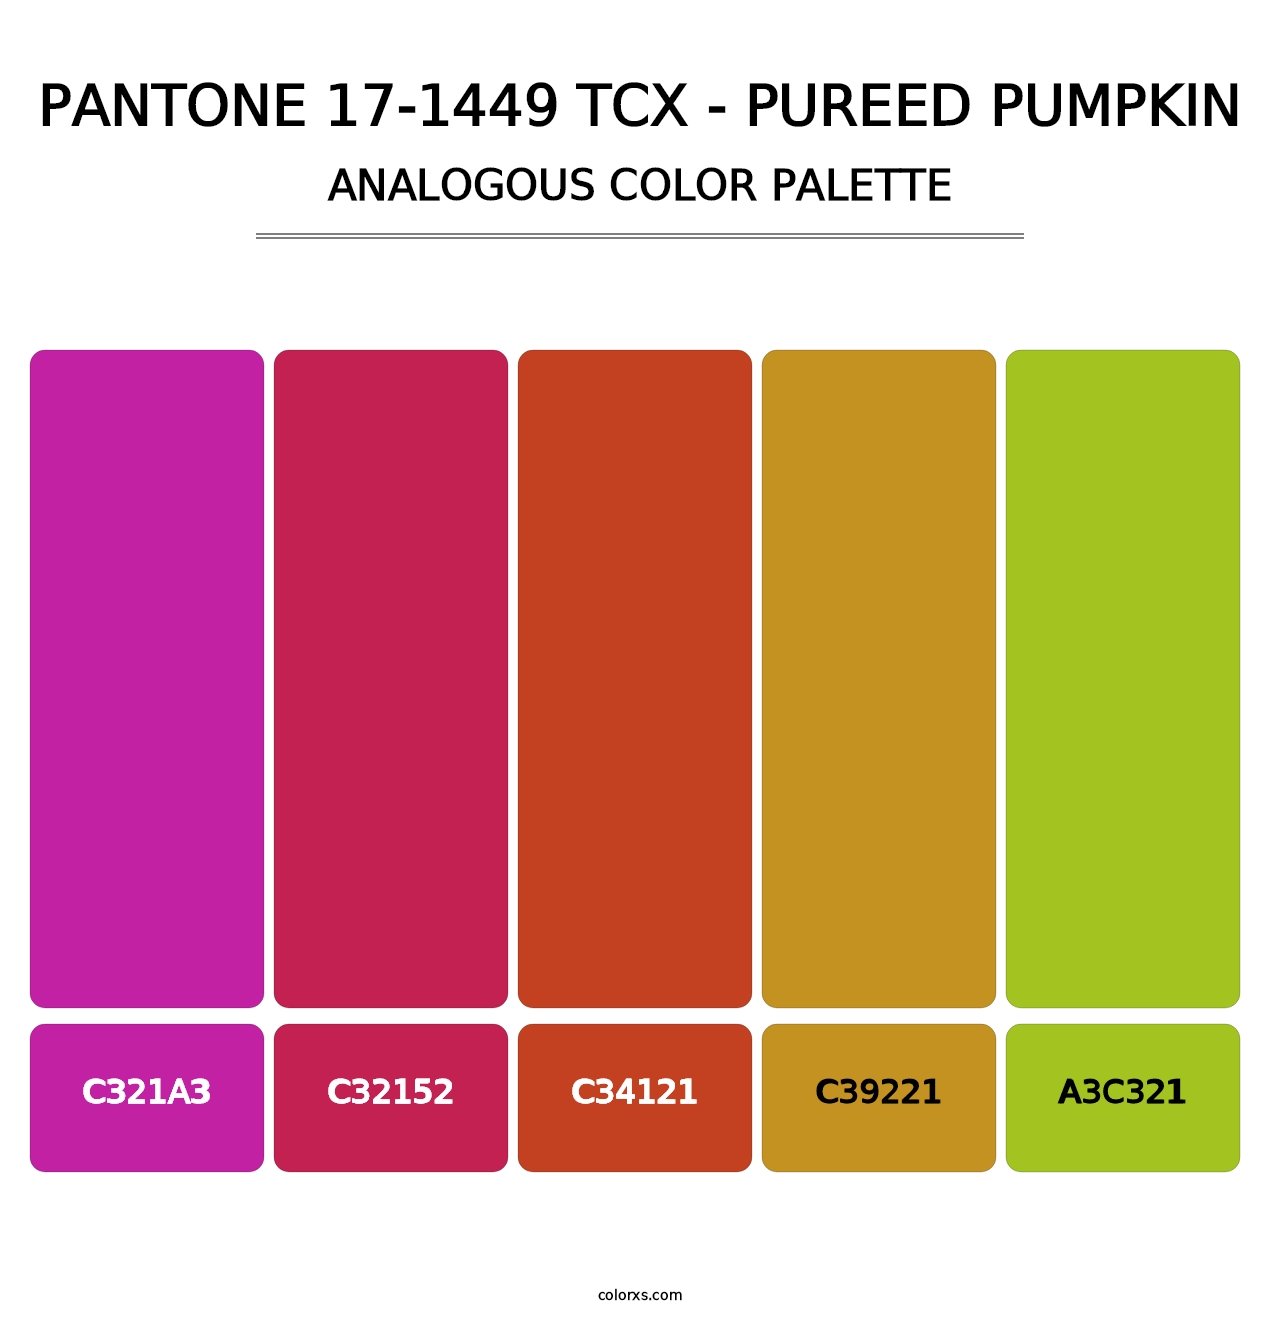 PANTONE 17-1449 TCX - Pureed Pumpkin - Analogous Color Palette